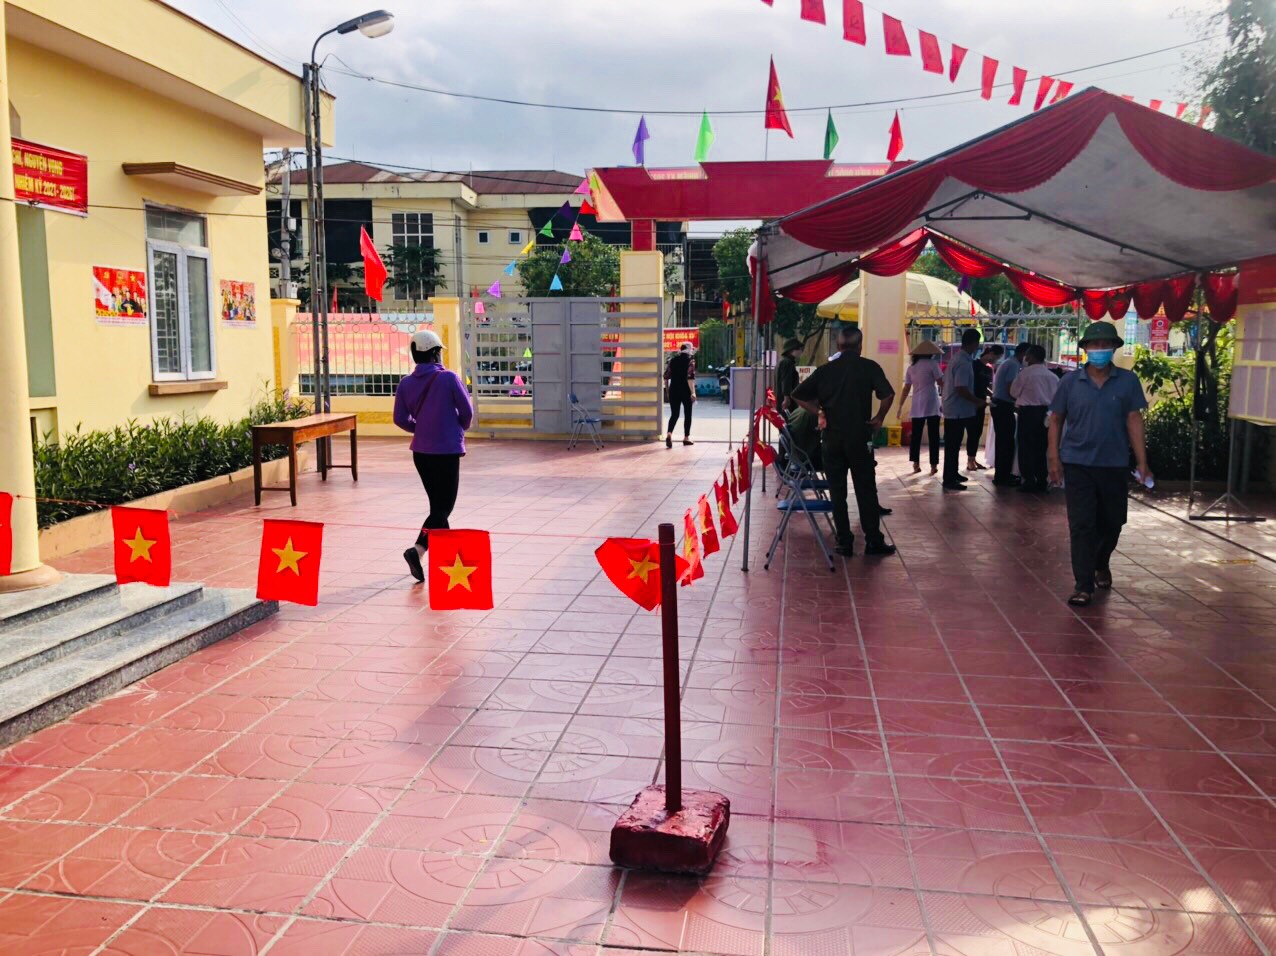 Quảng Ninh chuyển cả hòm phiếu lưu động tới giường bệnh cho bệnh nhân bỏ phiếu - Ảnh 4.